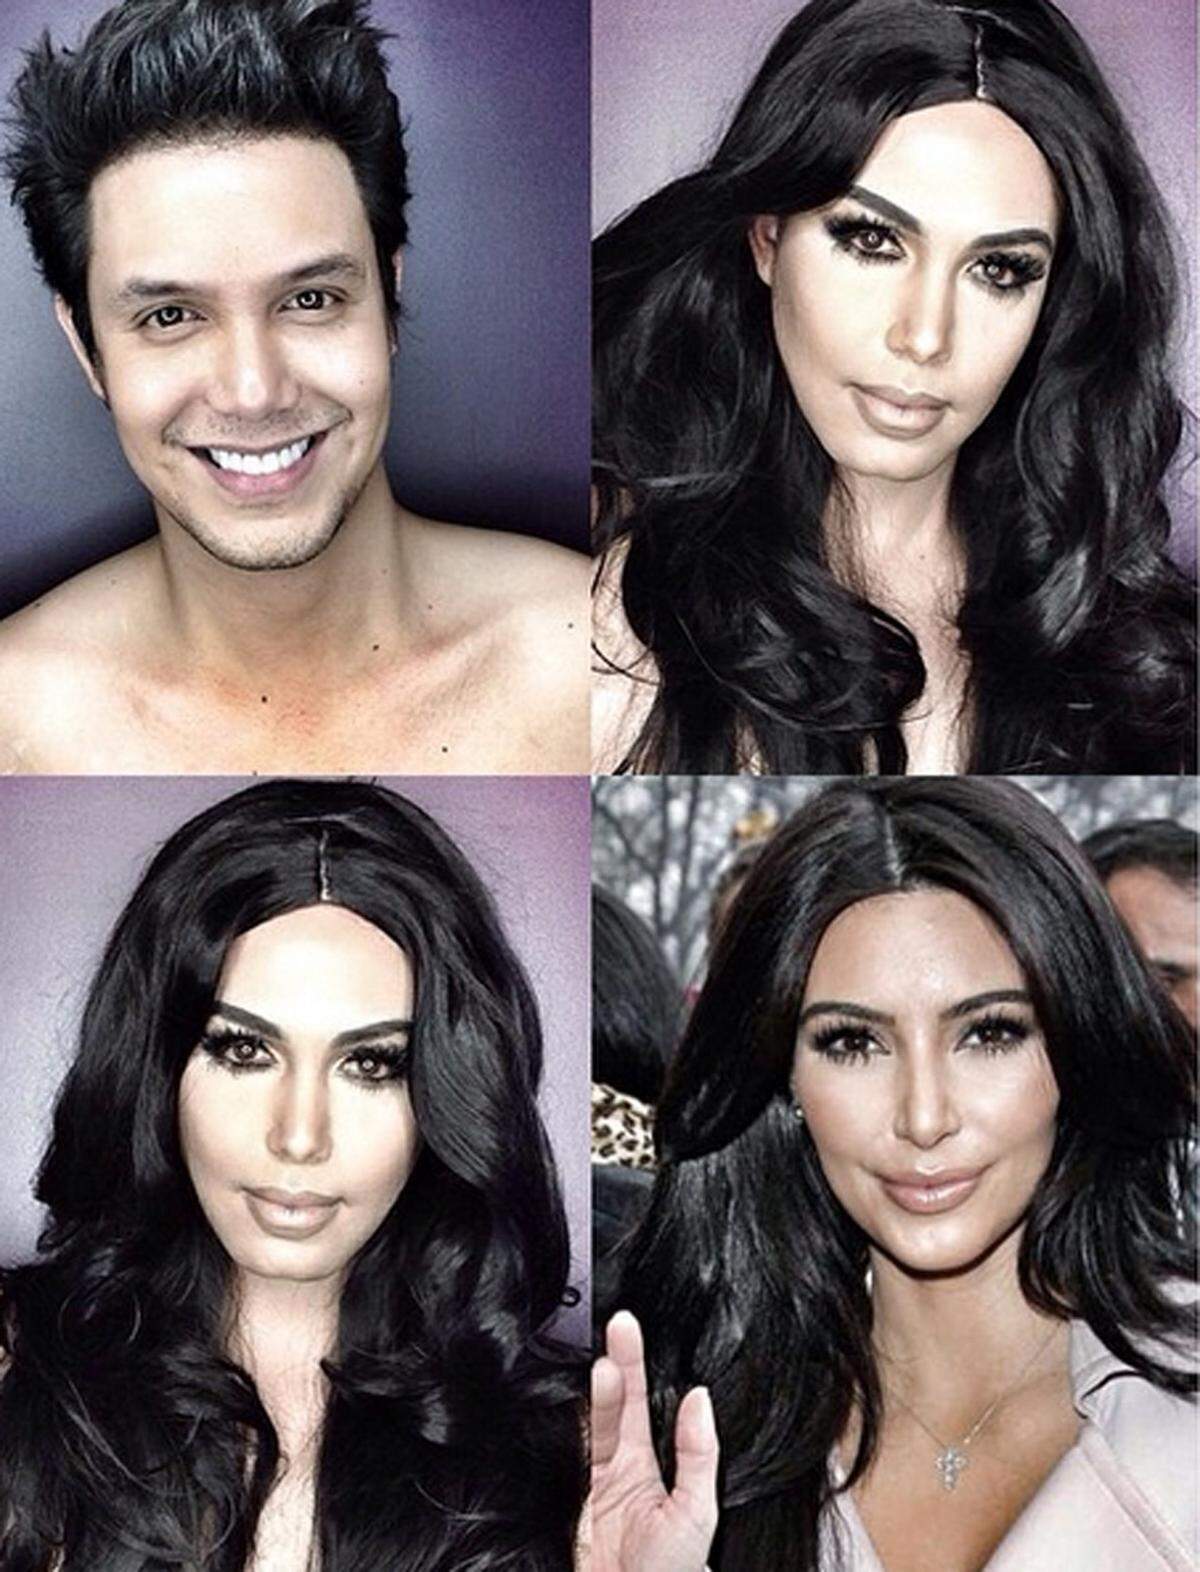 Mit dem richtigen Make-up kann man auch zu Kim Kardashian werden.